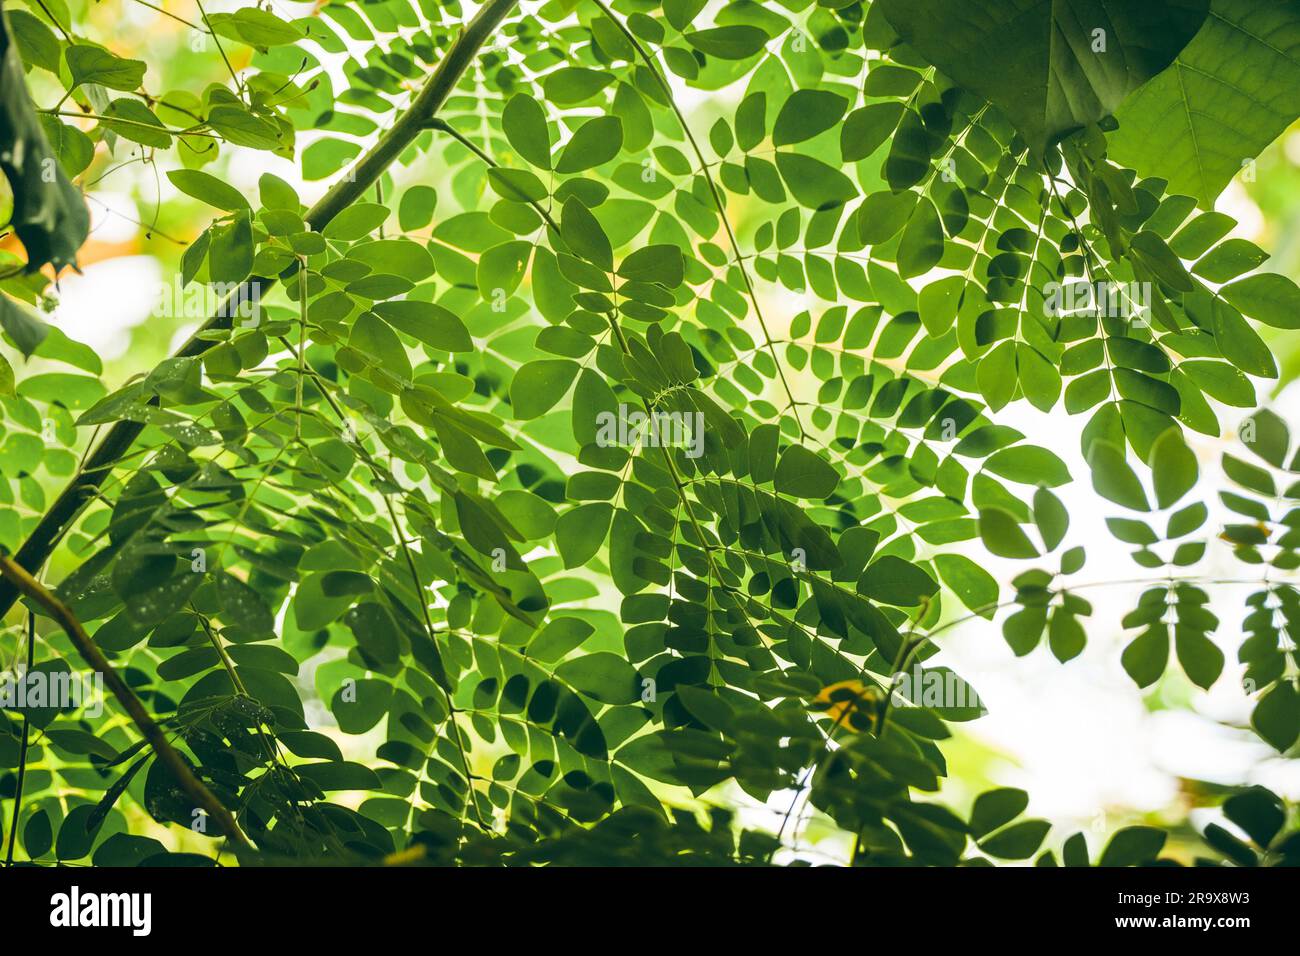 Tropische Vegetation mit grünen Blättern in hellem Licht Stockfoto